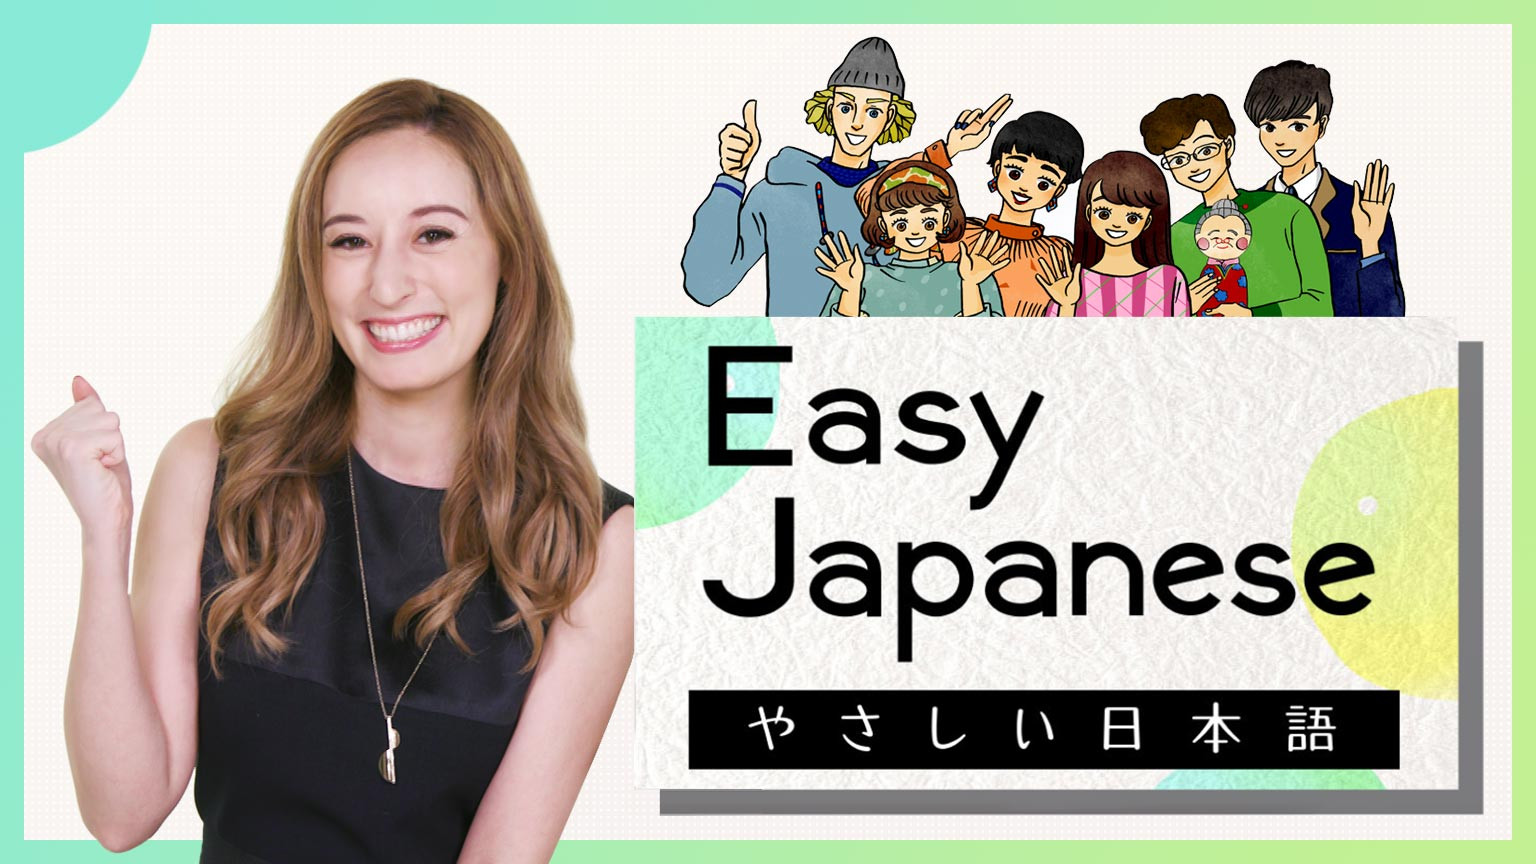 Cùng nhau học tiếng Nhật
Easy Japanese